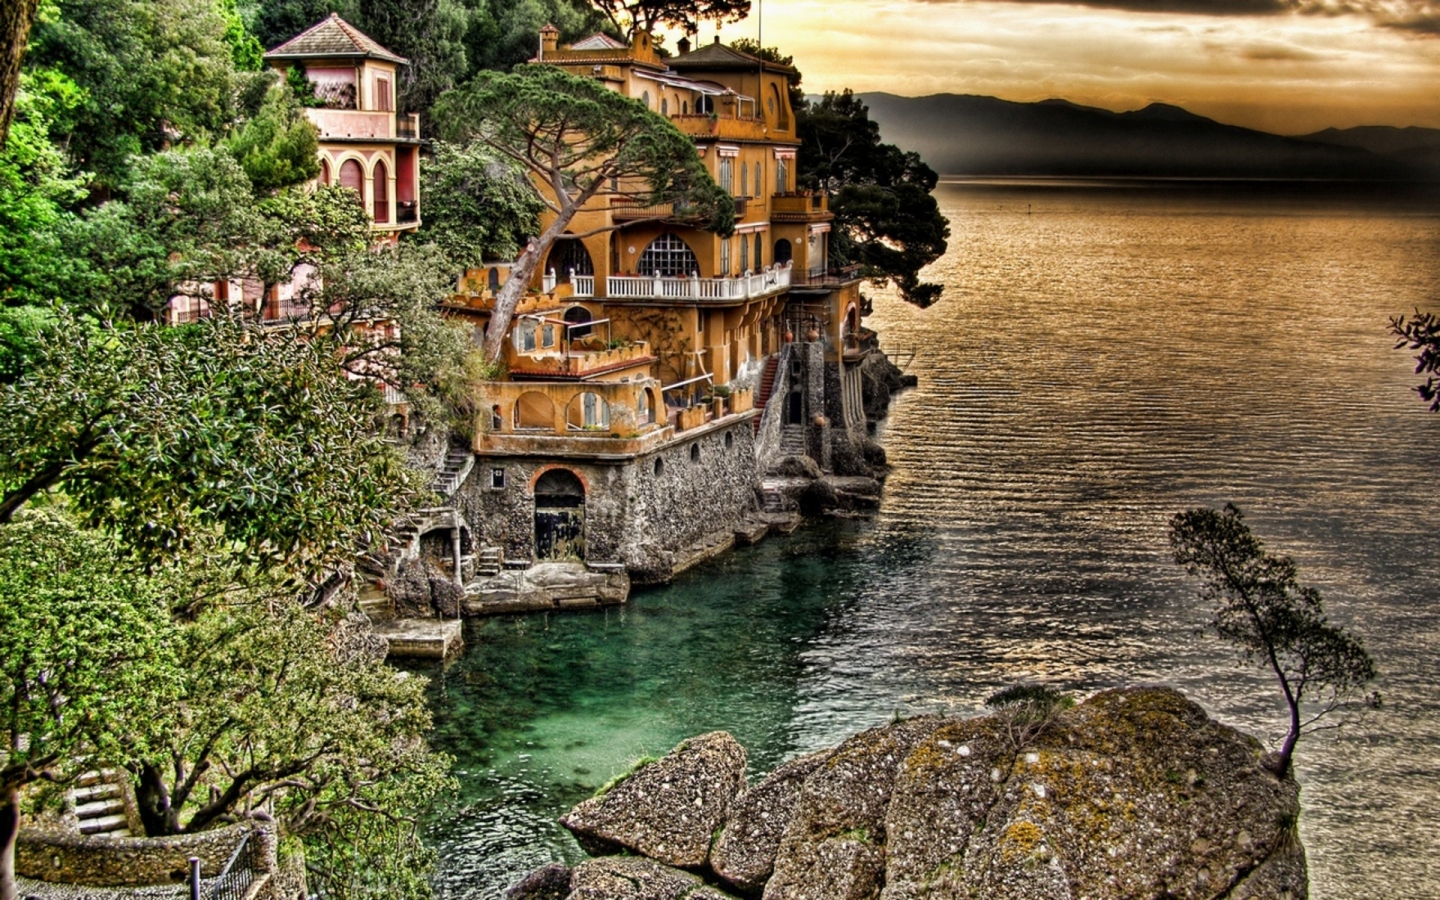 Portofino Coast View for 1440 x 900 widescreen resolution